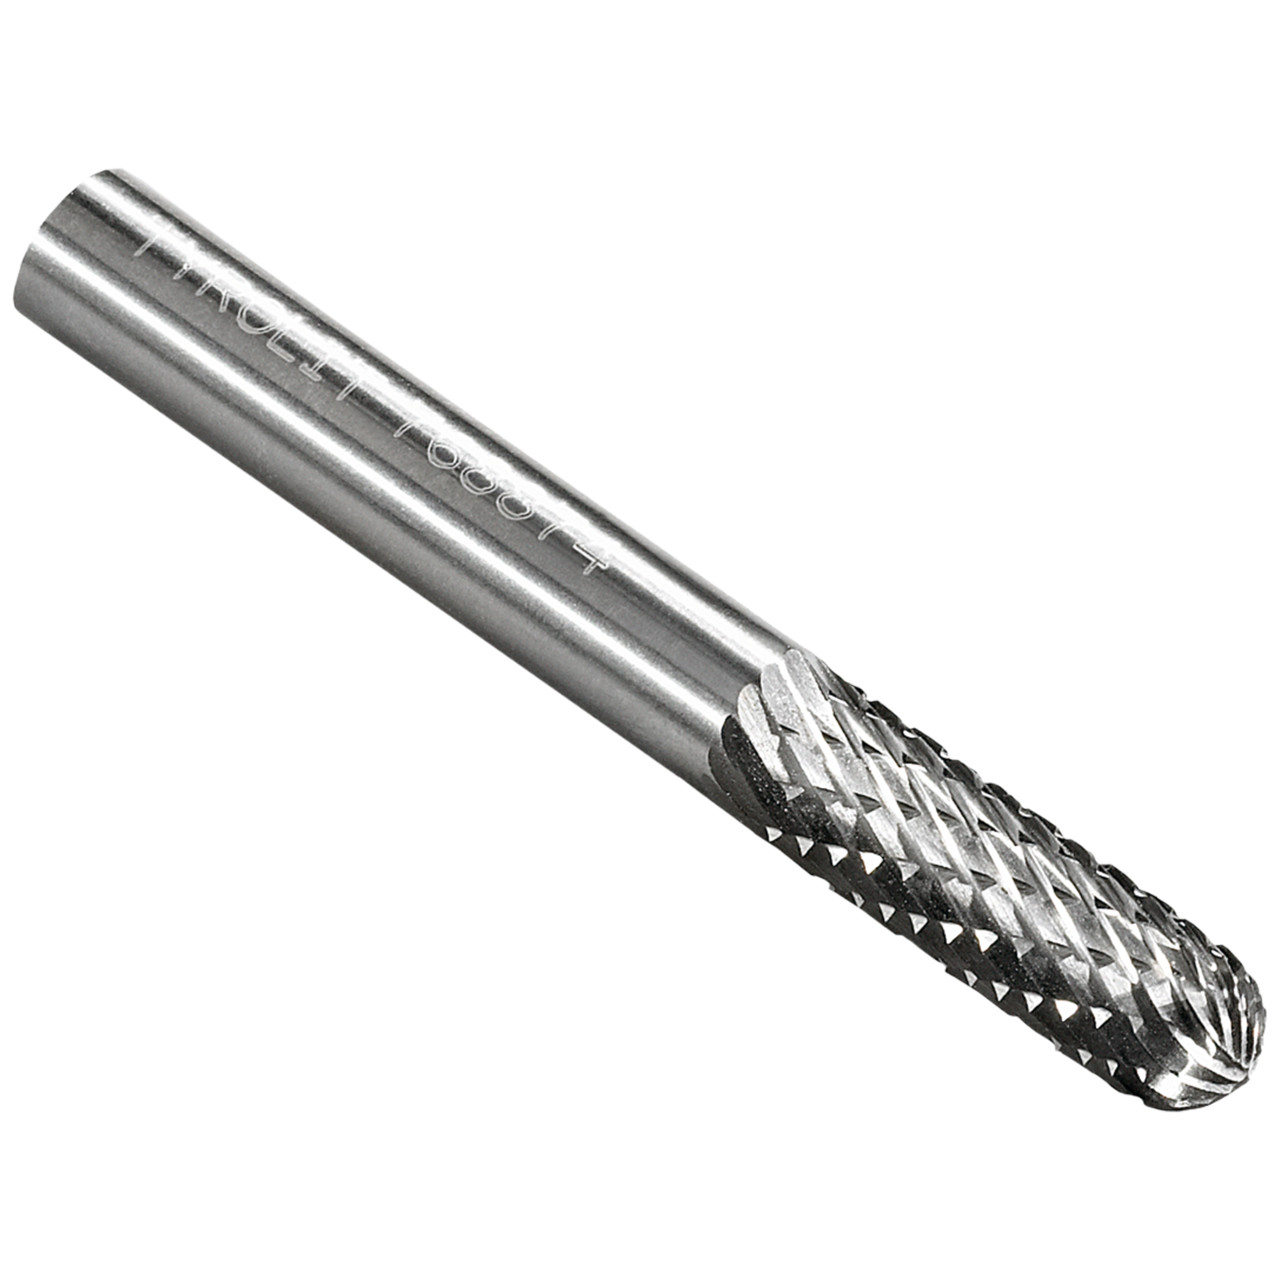 Tyrolit Fresa de metal duro DxT-SxL 6x19-6x50 Para fundición, acero y acero inoxidable, forma: 52WRC - cilíndrica, Art. 768874